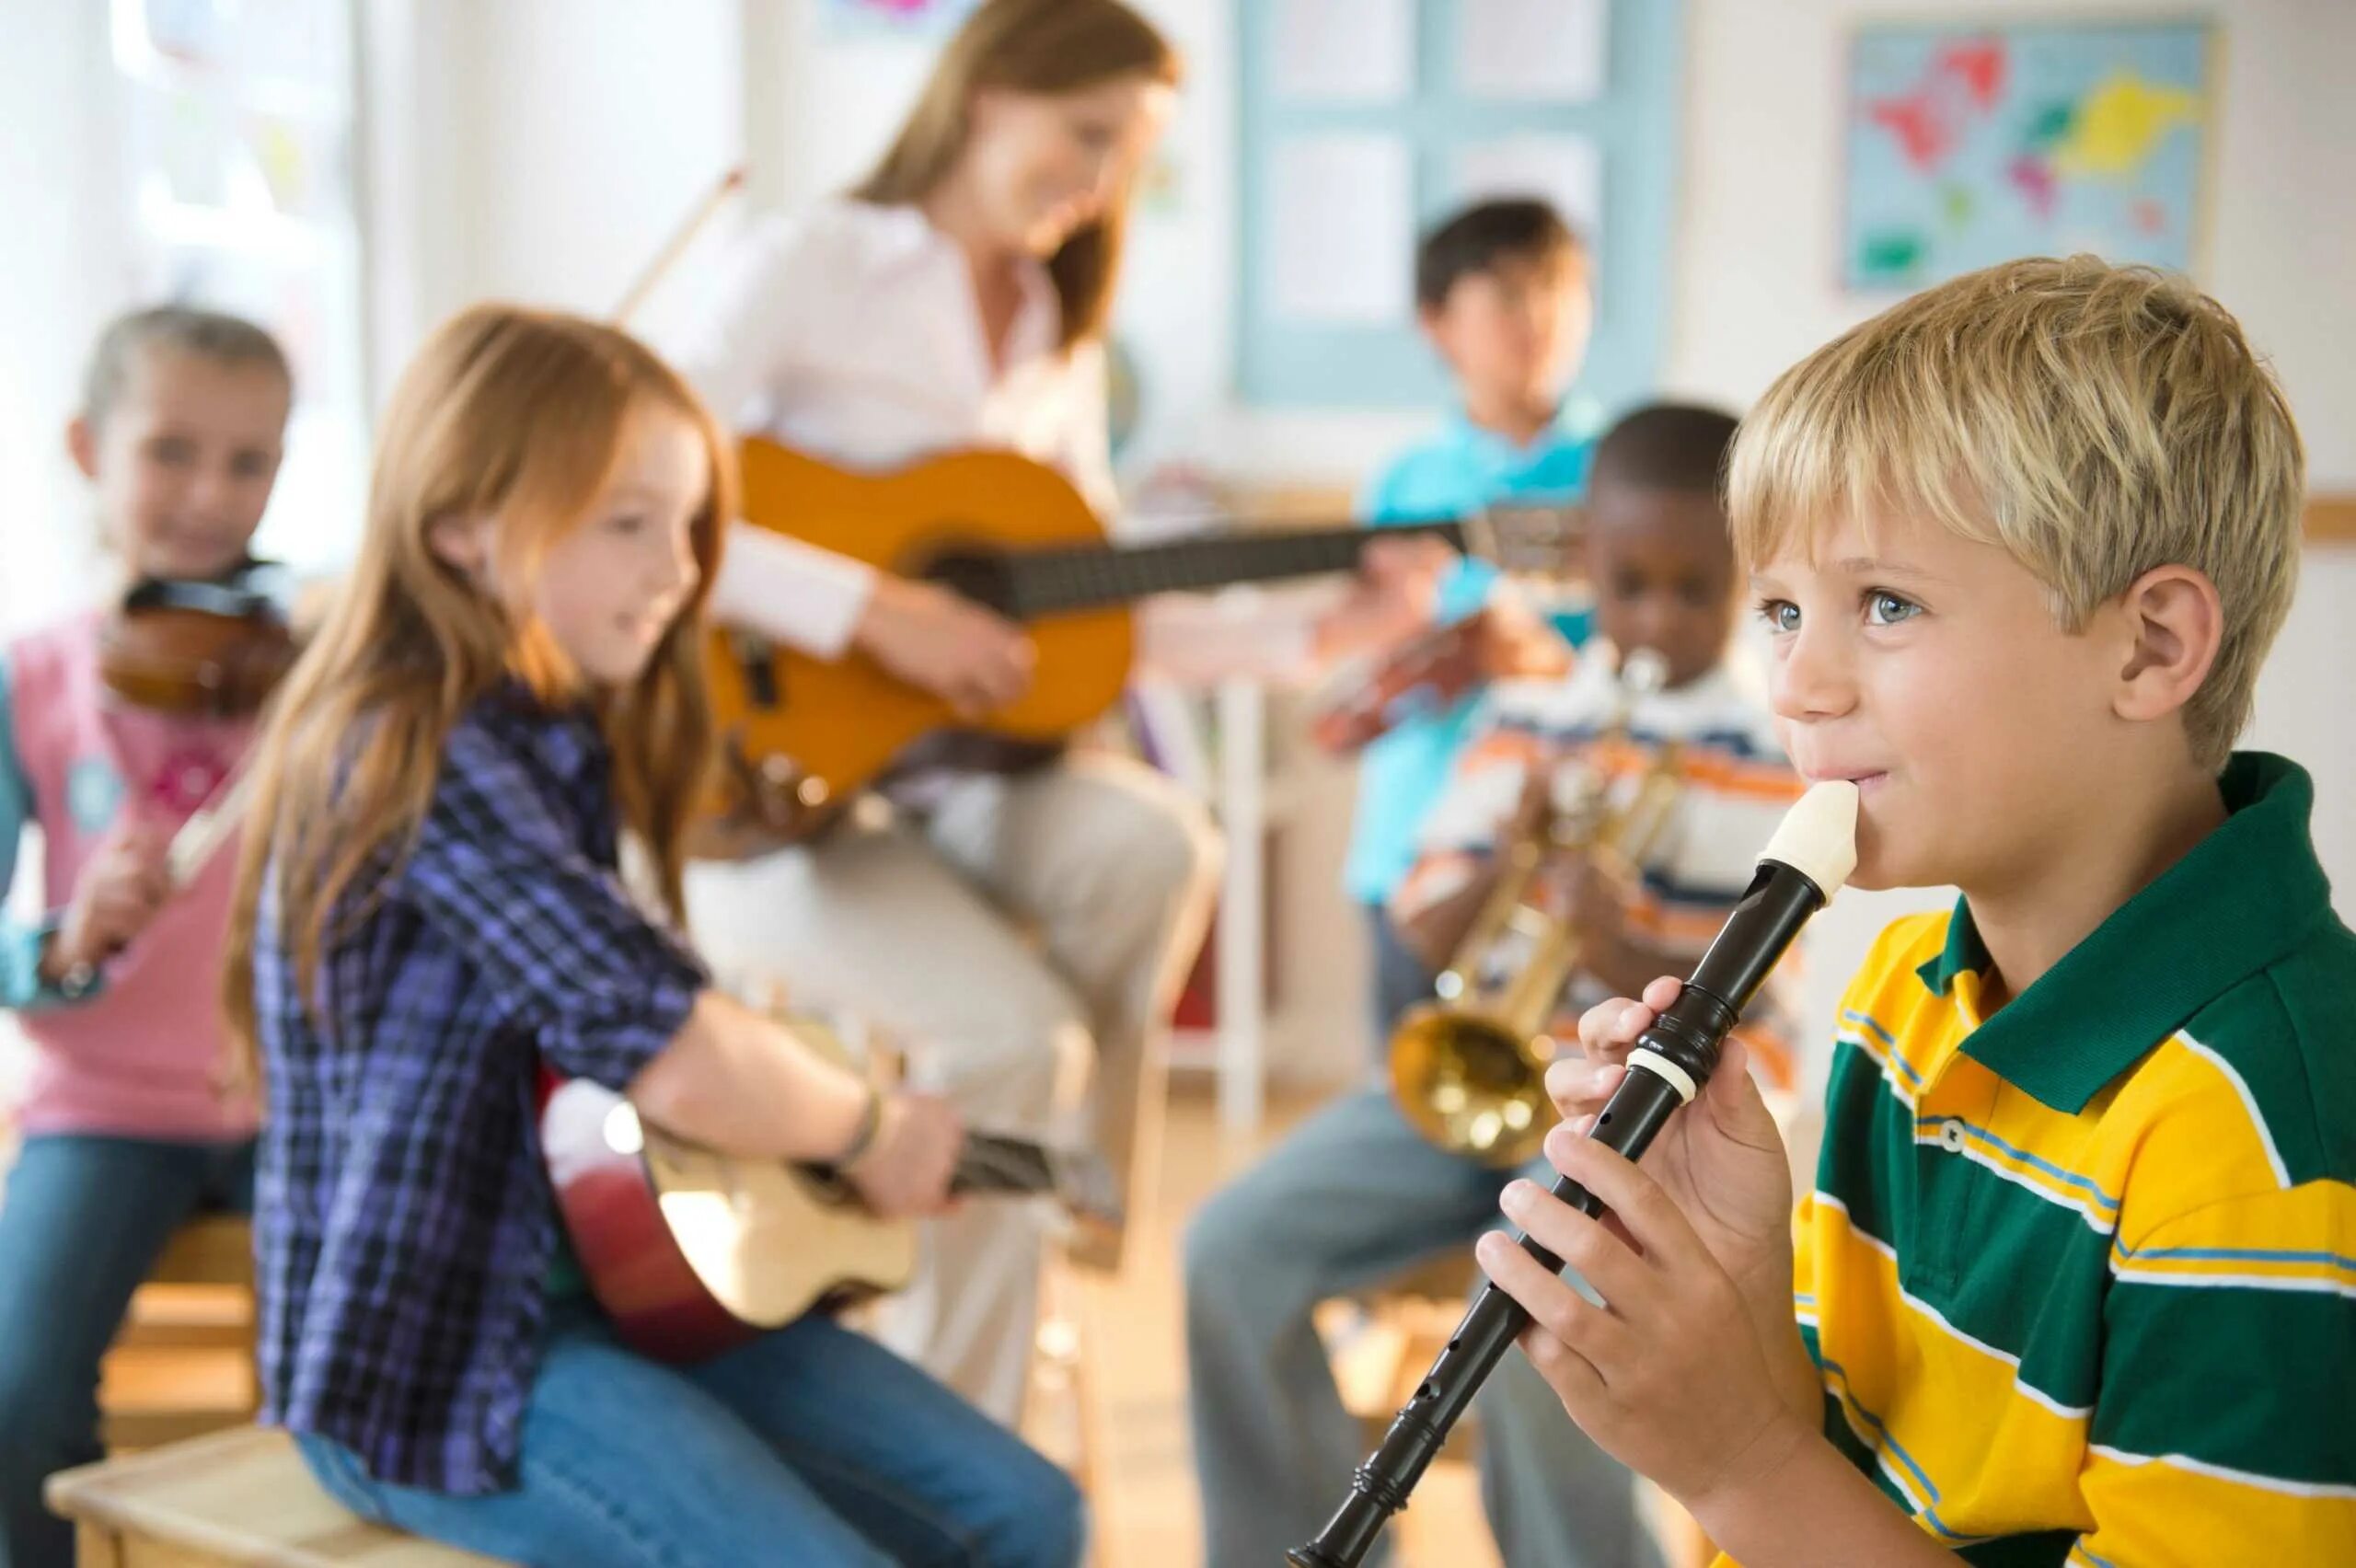 Музыка для развлечения. Музыкальные инструменты для детей. Дети в музыкальной школе. Занятие в музыкальной школе. Дети в музыкалке.